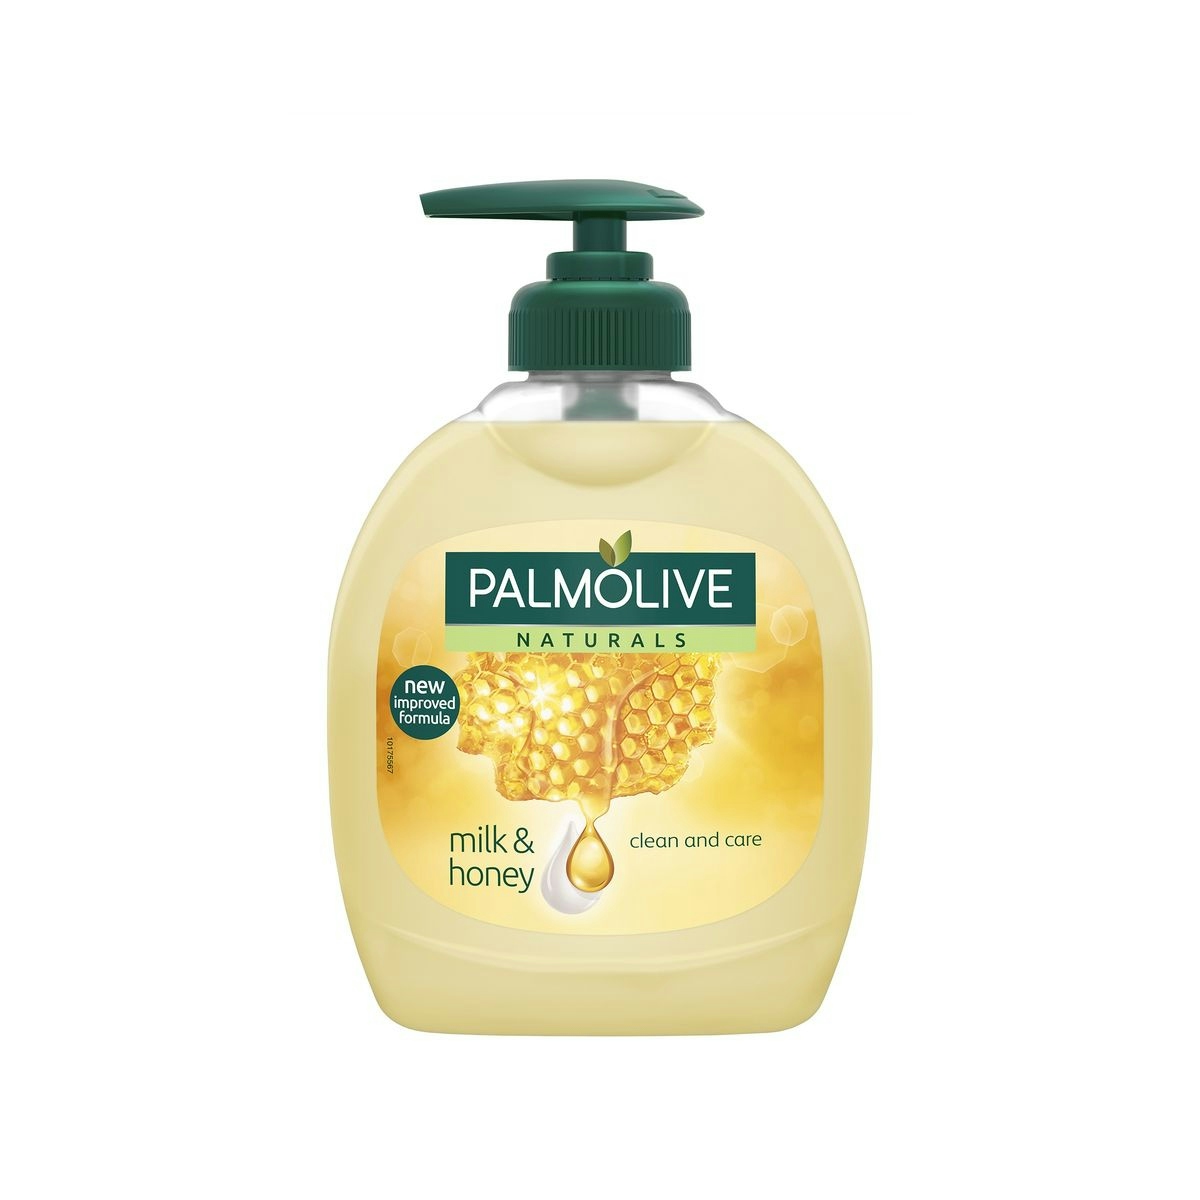 Jabón de manos Palmolive Naturals, Leche y Miel nutritivo 300ml